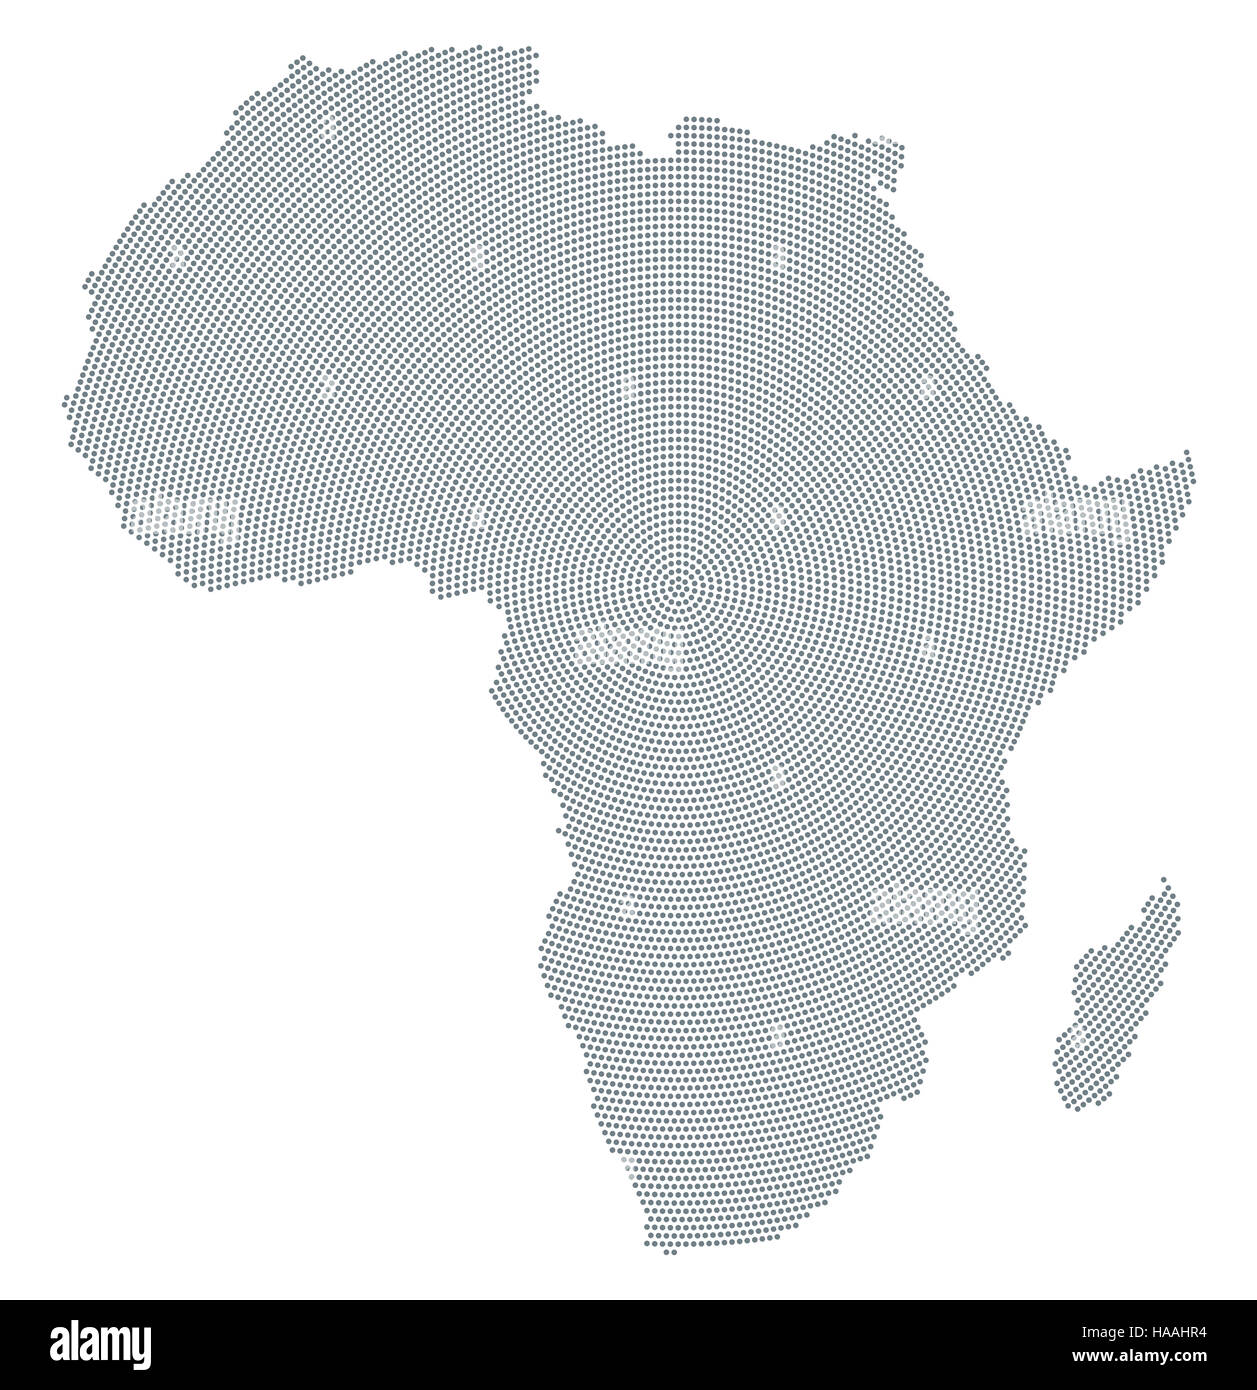 Afrika Karte radial Punktmuster. Graue Punkte gehen von der Mitte nach außen bilden die Silhouette des afrikanischen Kontinents. Stockfoto